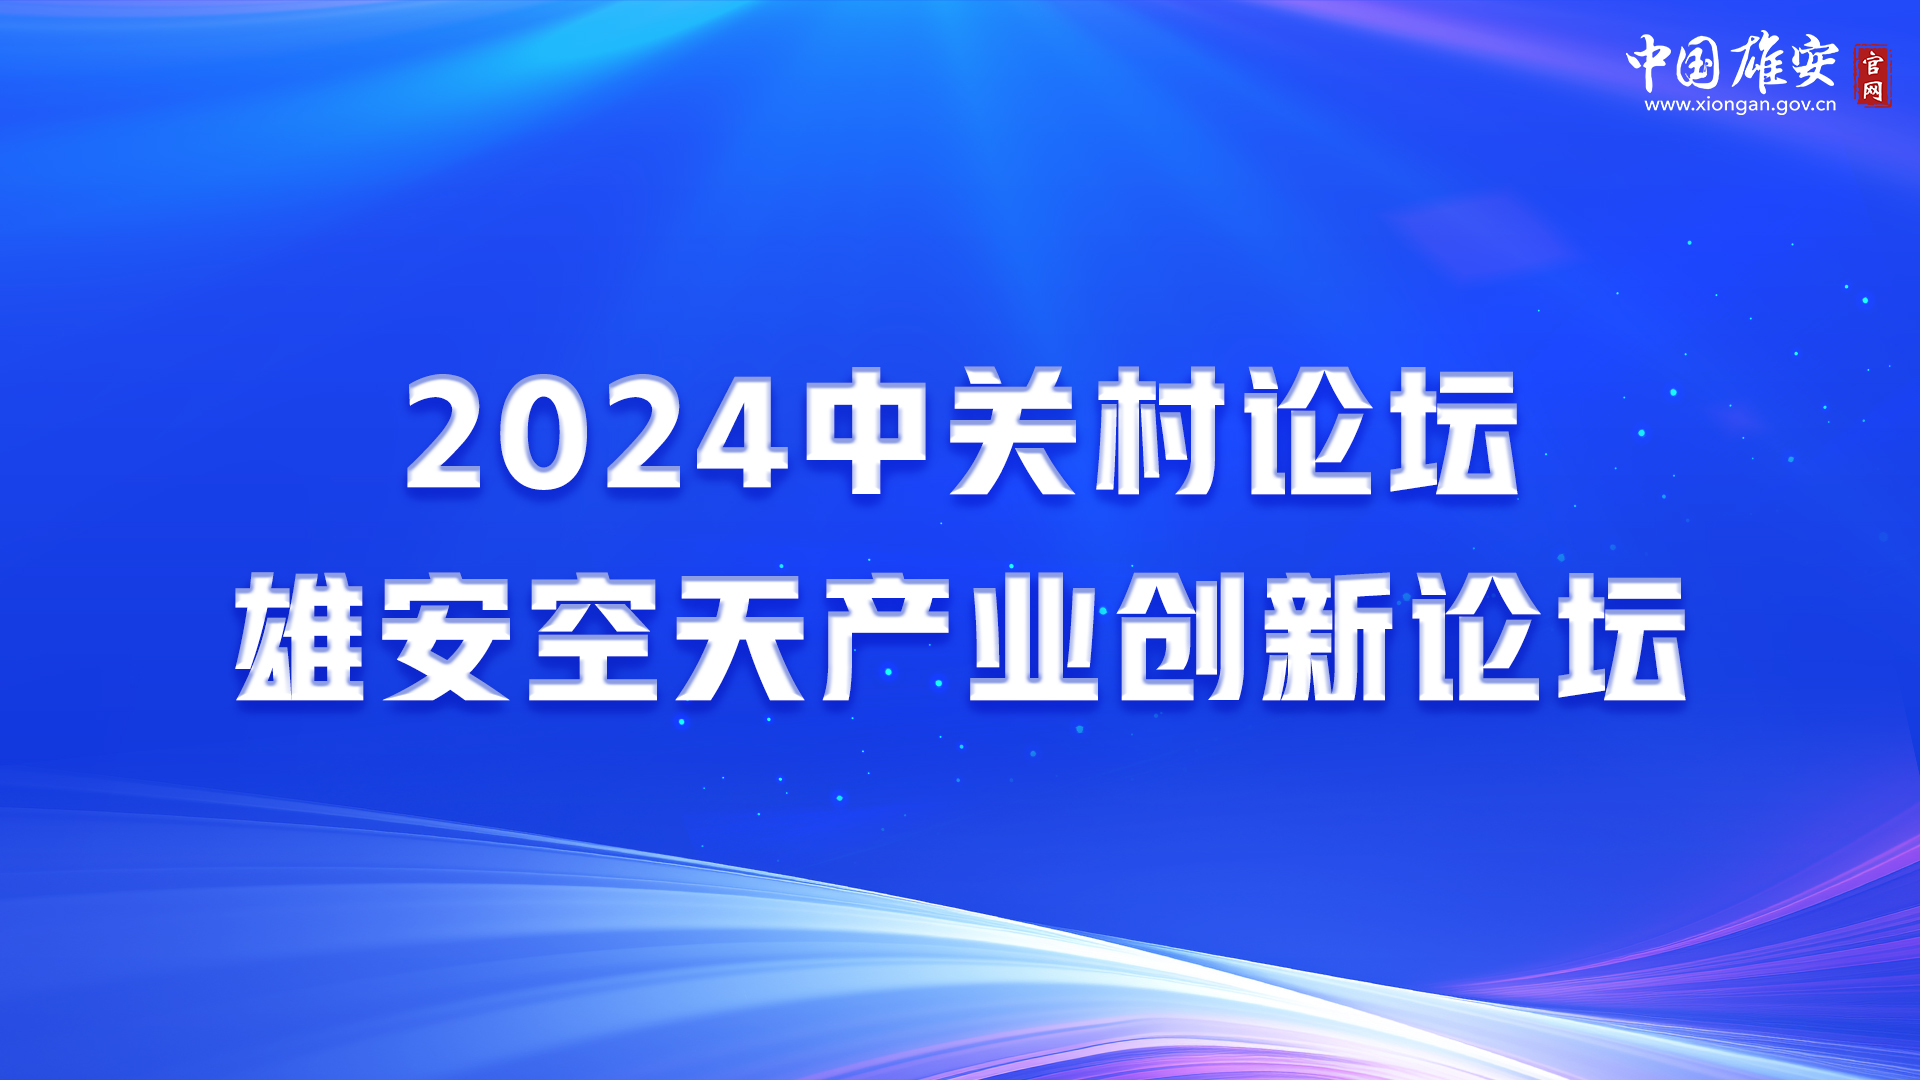 2024中关村论坛雄安空天产业创新论坛